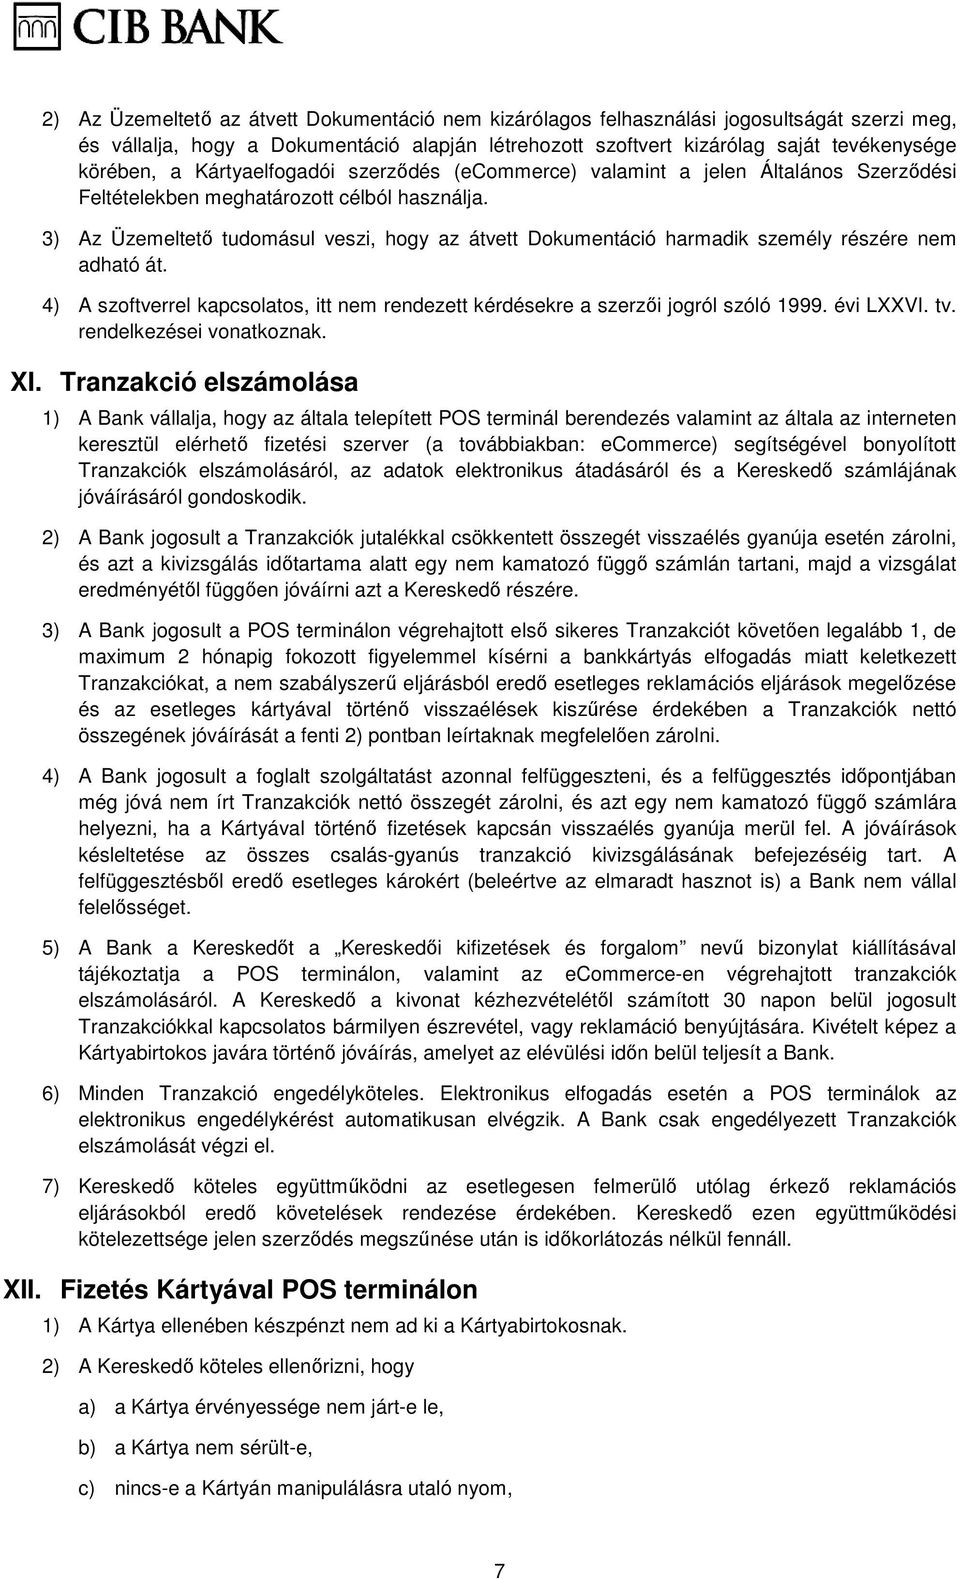 3) Az Üzemeltetı tudomásul veszi, hogy az átvett Dokumentáció harmadik személy részére nem adható át. 4) A szoftverrel kapcsolatos, itt nem rendezett kérdésekre a szerzıi jogról szóló 1999. évi LXXVI.